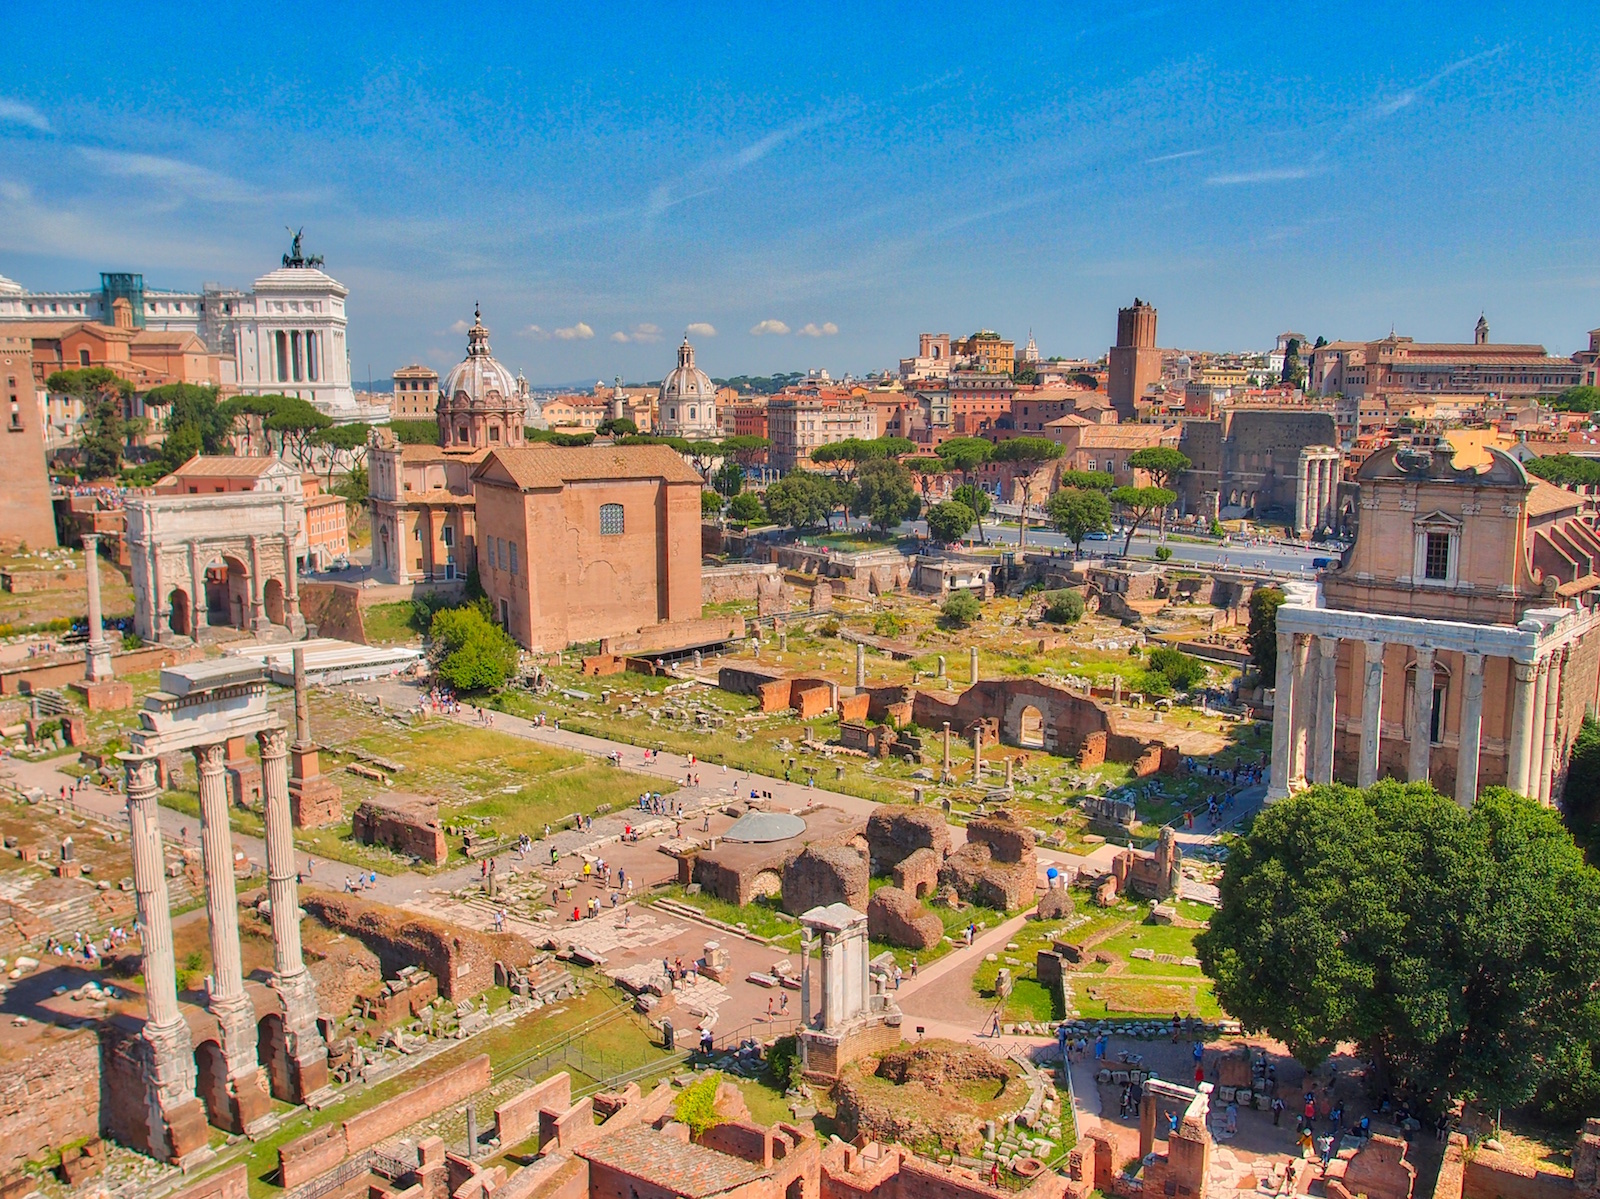 Roman Forum Area